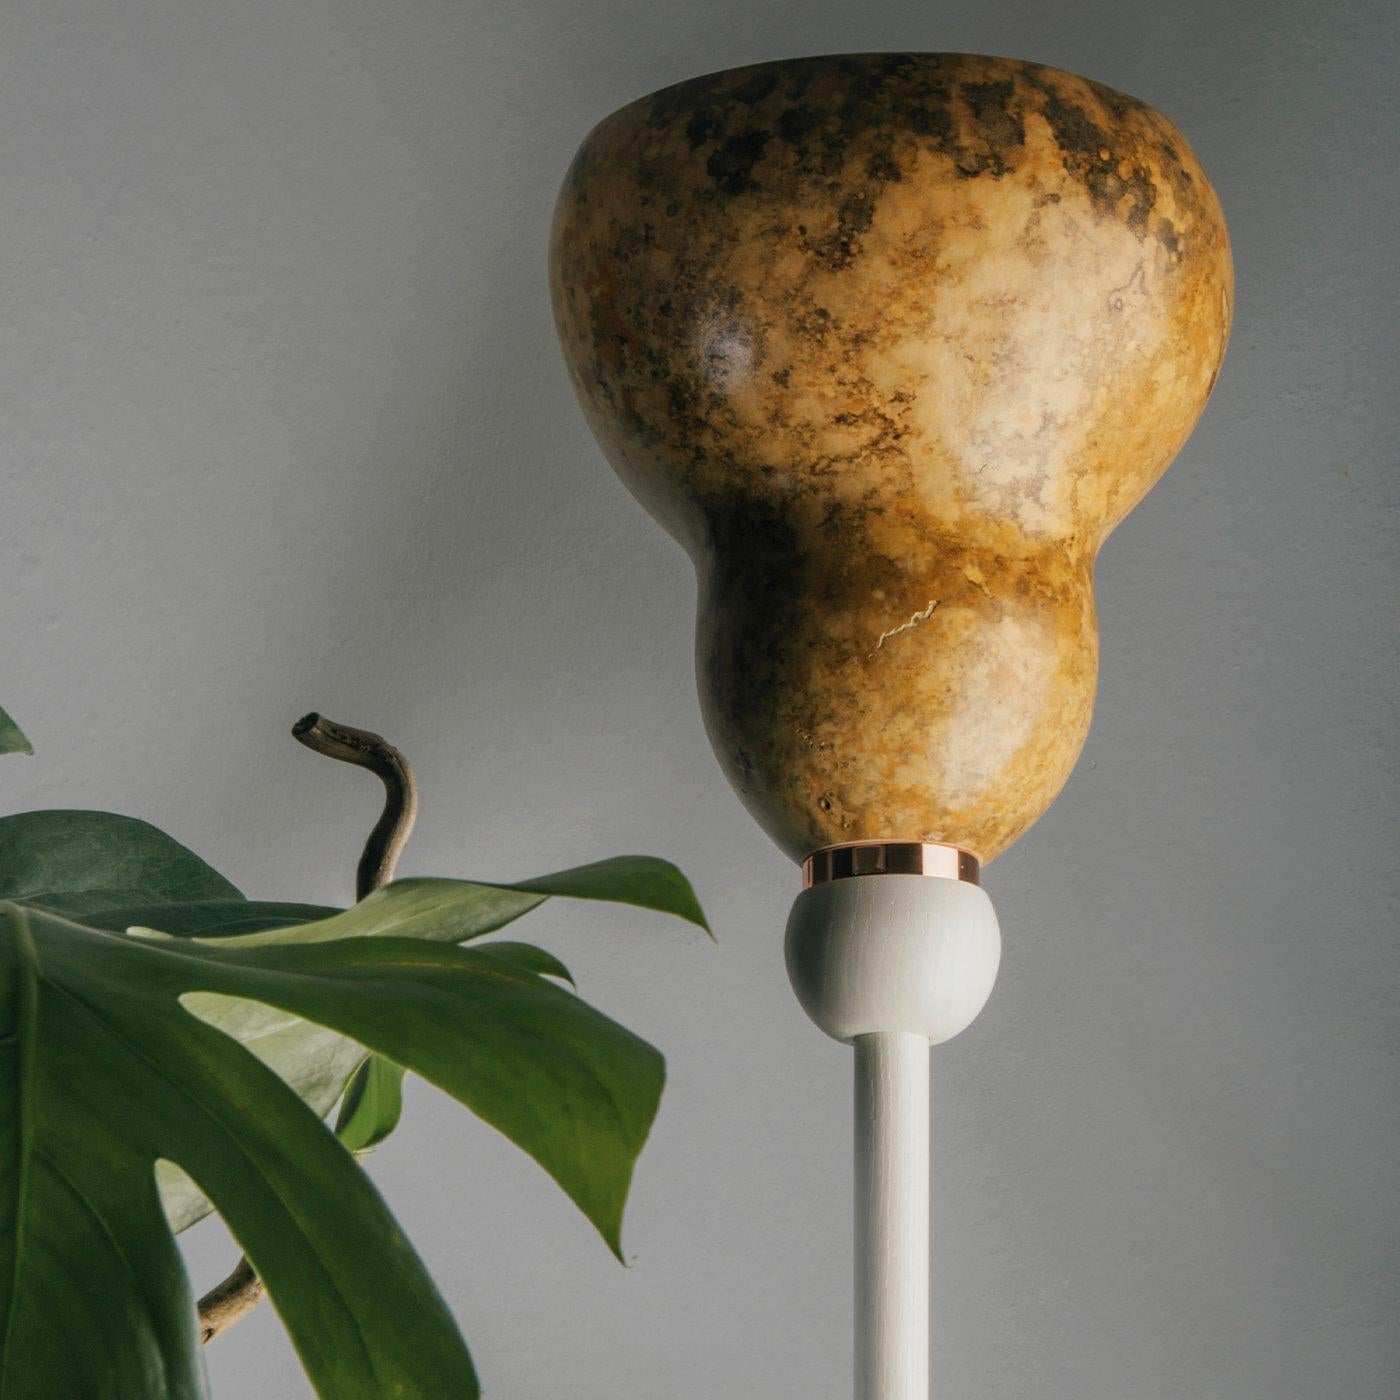 Tulip est un élégant lampadaire durable en bois de frêne peint à l'eau, en gourde séchée Lagenaria et en métal recyclé.
Sa particularité est l'harmonie résultant des lignes sinueuses et douces de la lampe. La structure porteuse est animée par le